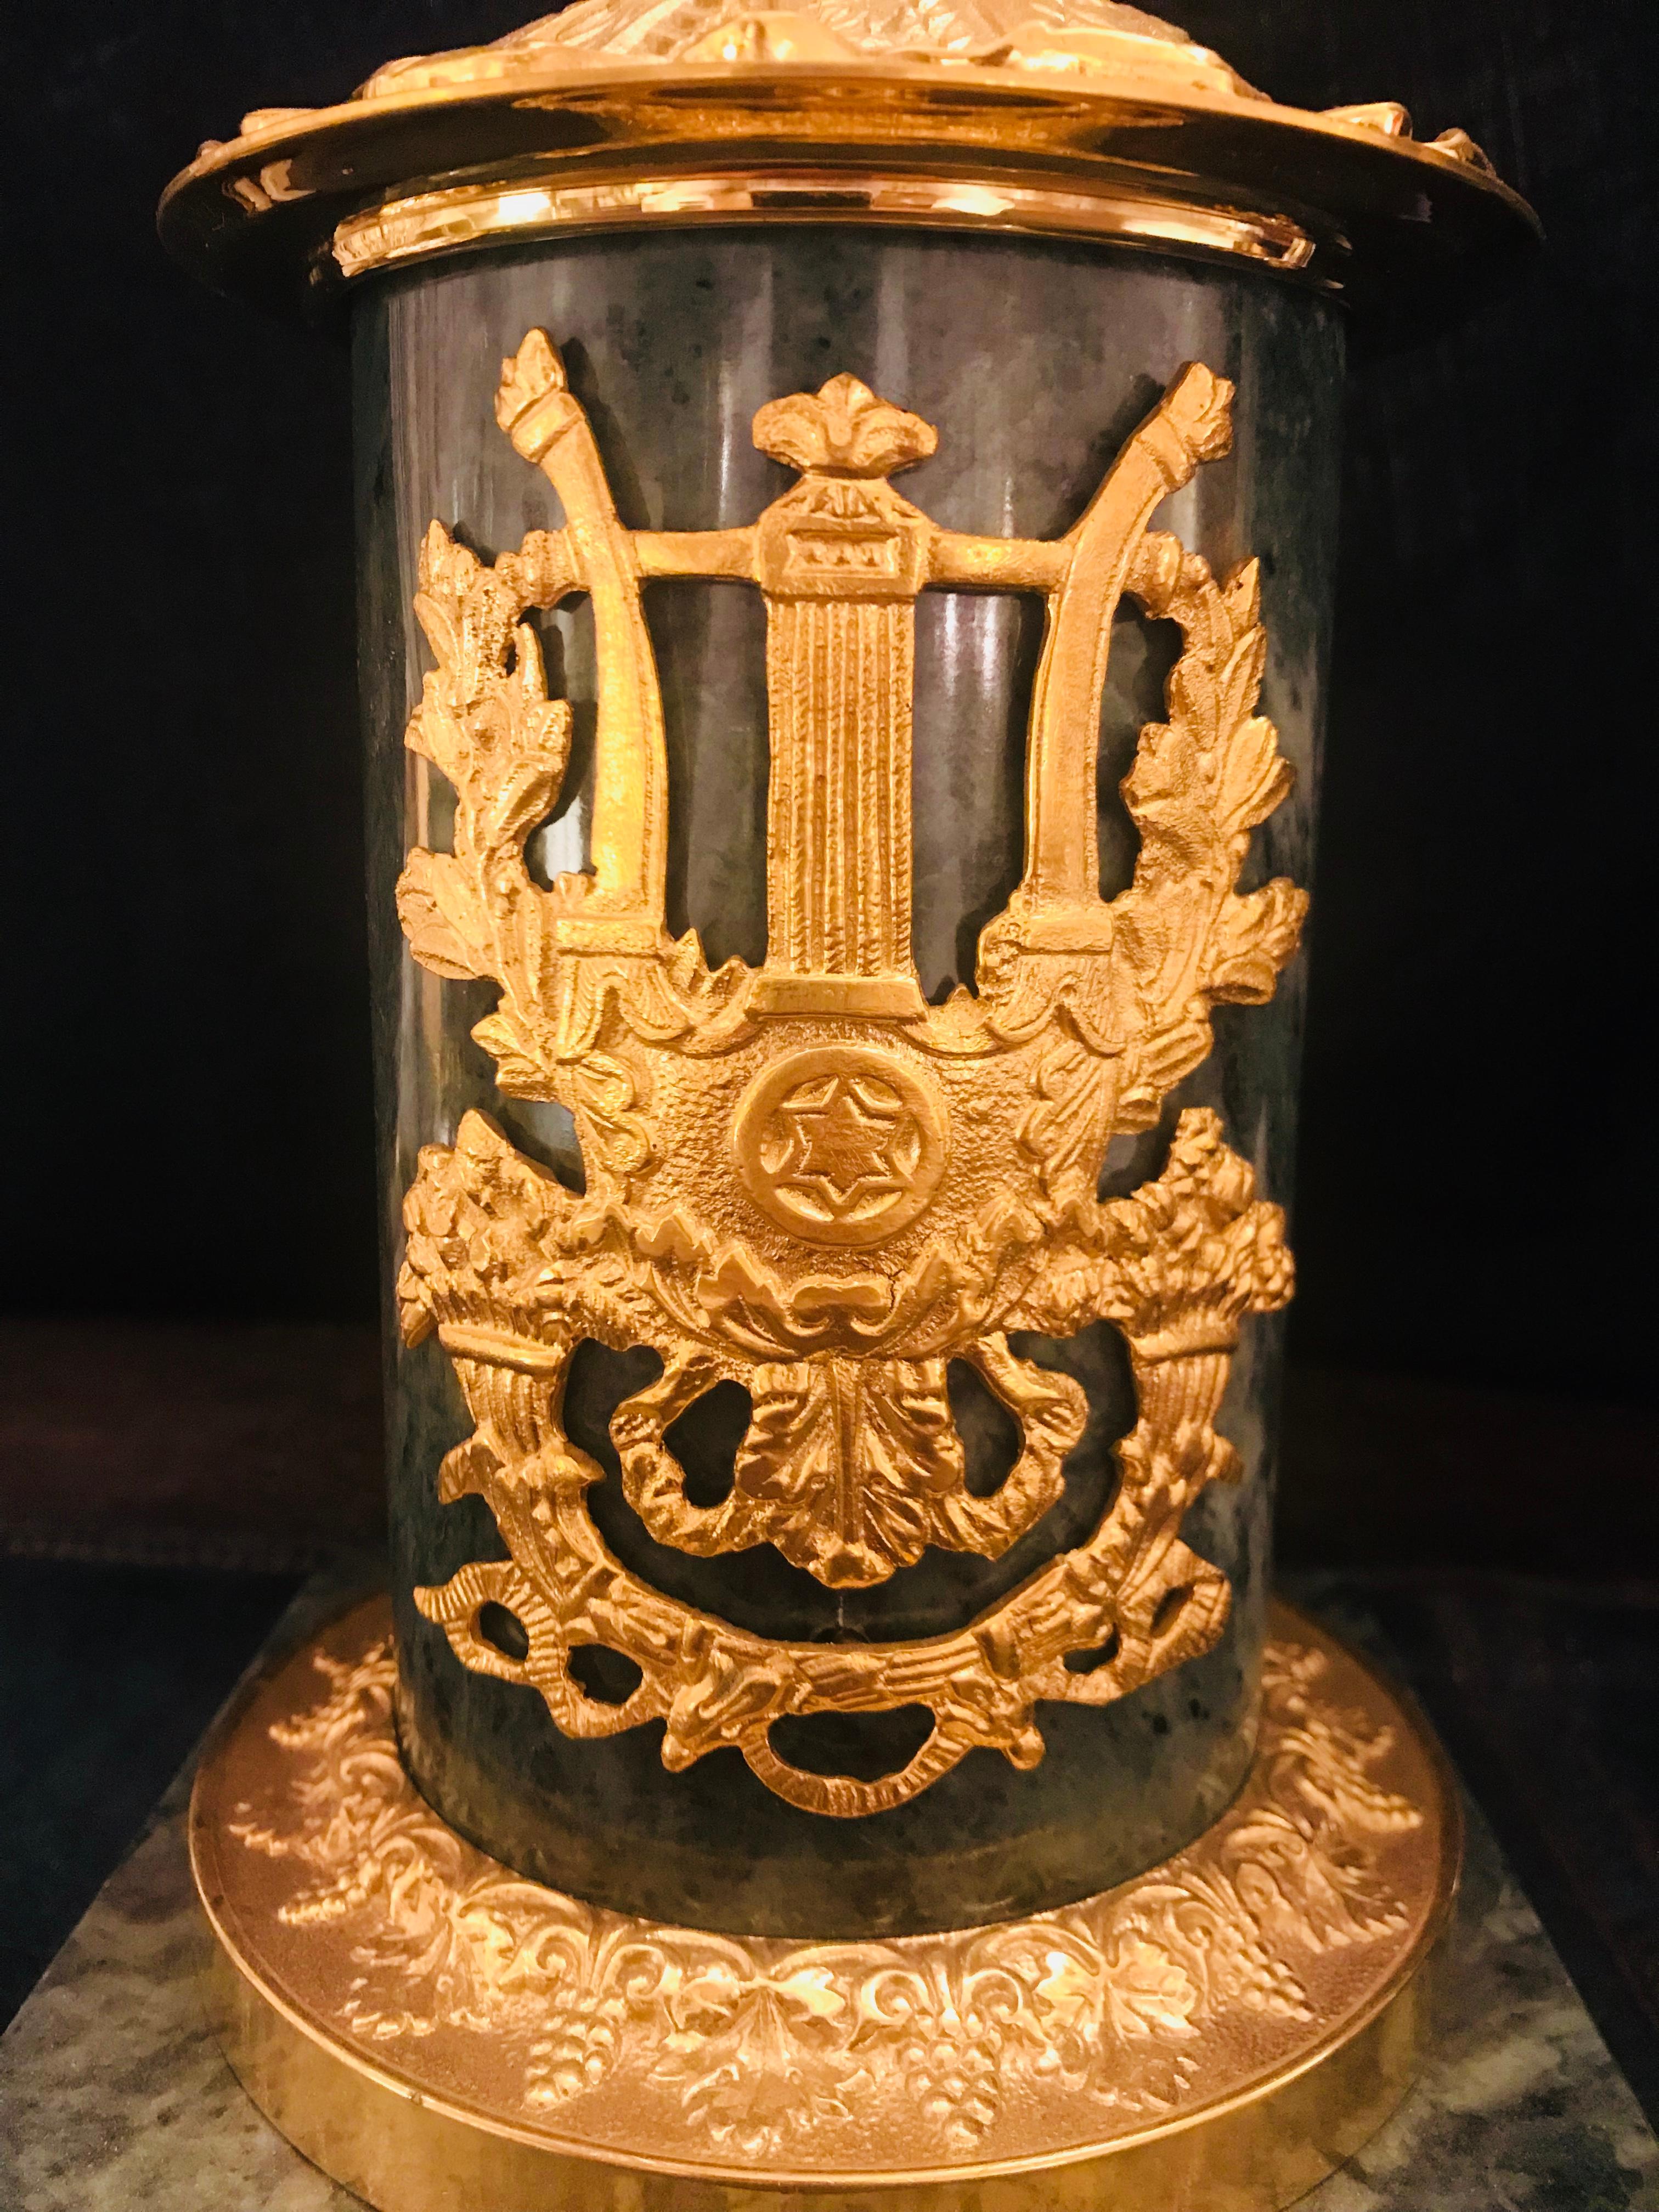 Dieser vergoldete und brünierte Bronzeleuchter im Empire-Stil von Gherardo Degli Albizzi mit seinem Marmorsockel ist ein Beispiel für den großartigen Dekorationsgeschmack der napoleonischen Zeit. Der Sockel besteht aus einem säulenförmigen